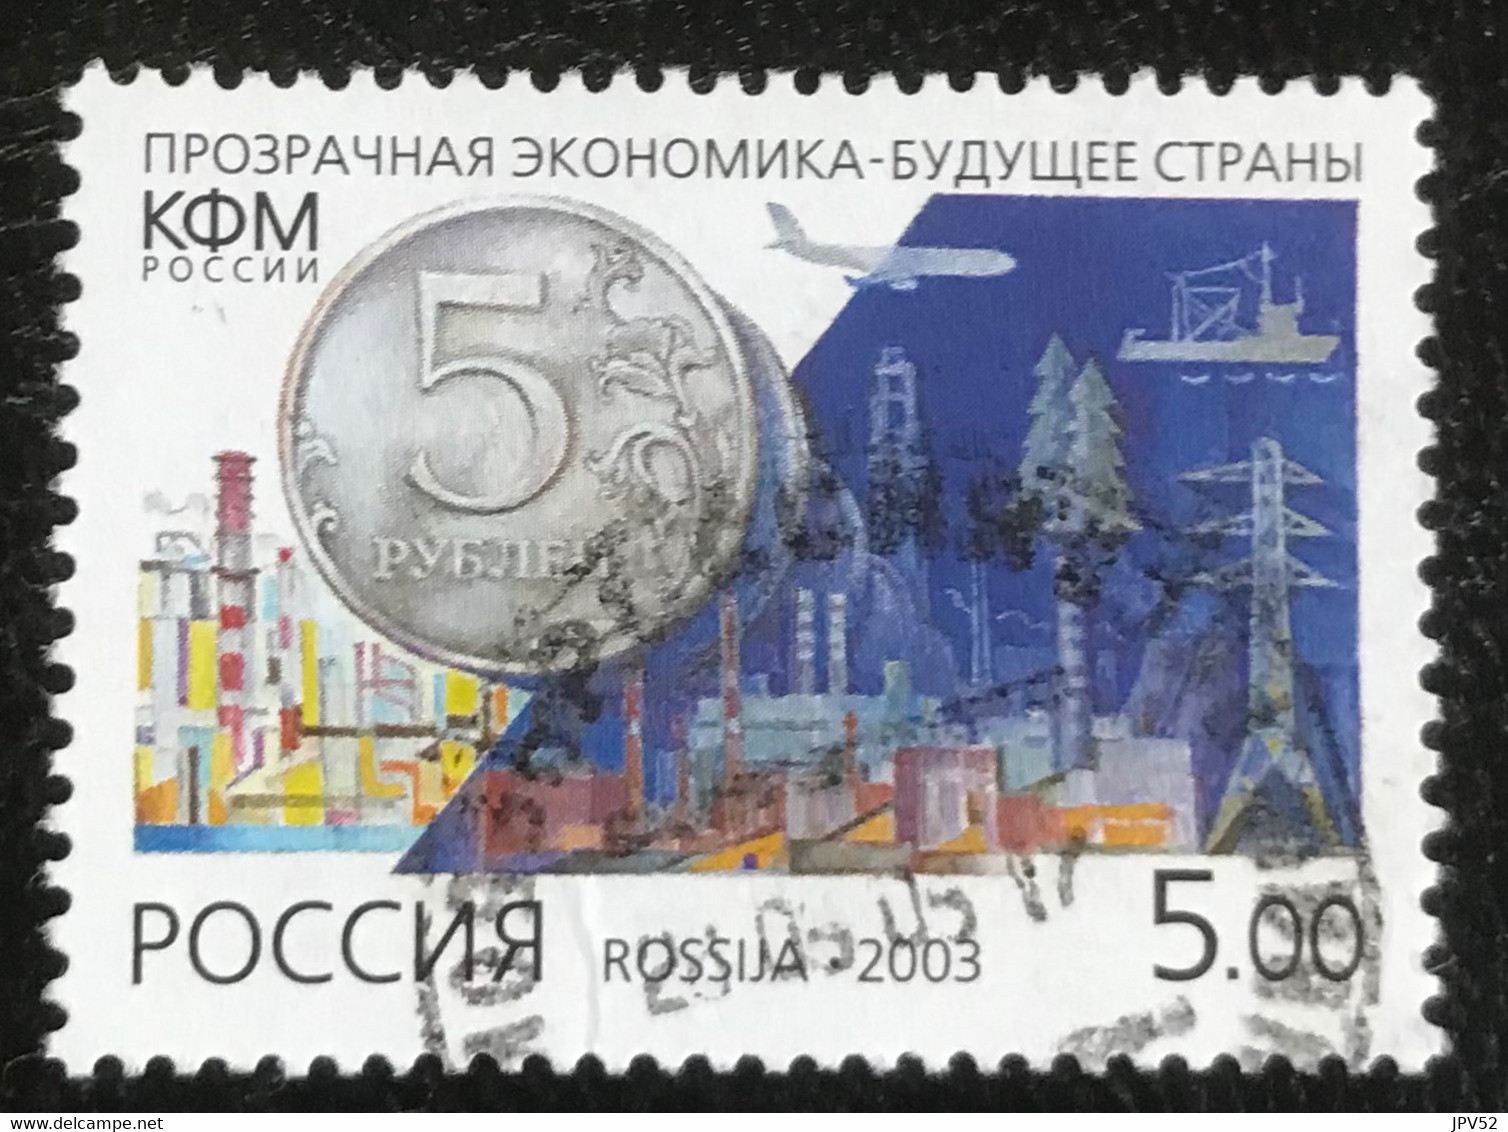 Rossija - Russische Federatie - 11/22 - (°)used - 2003 - Michel 1095 - Transparante Economie - Gebraucht